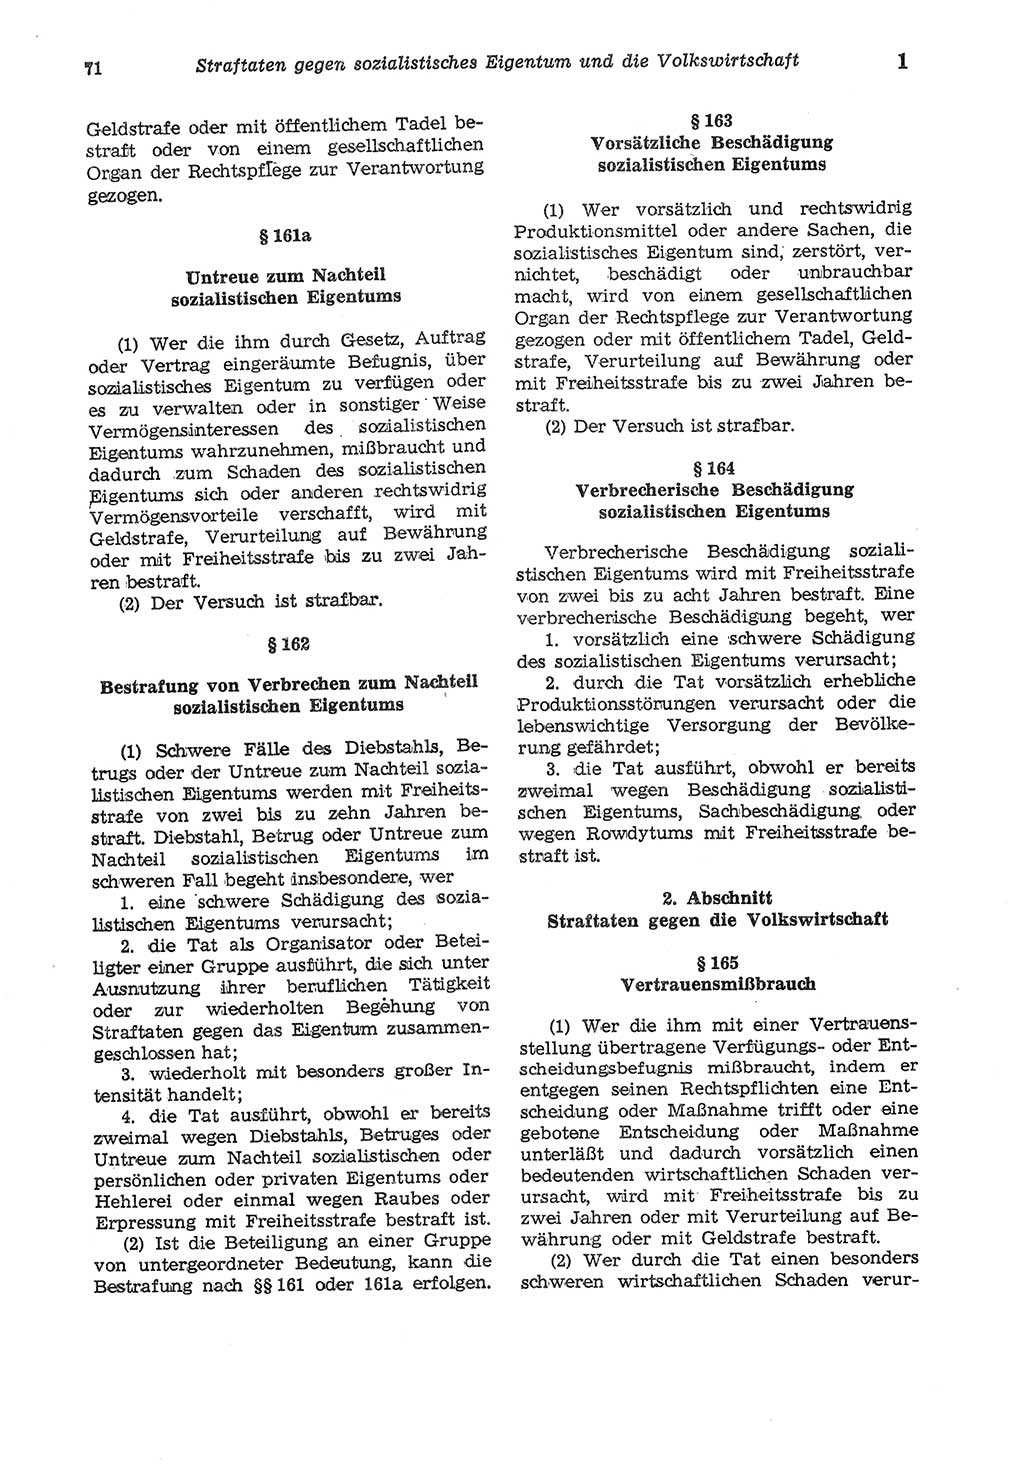 Strafgesetzbuch (StGB) der Deutschen Demokratischen Republik (DDR) und angrenzende Gesetze und Bestimmungen 1975, Seite 71 (StGB DDR Ges. Best. 1975, S. 71)